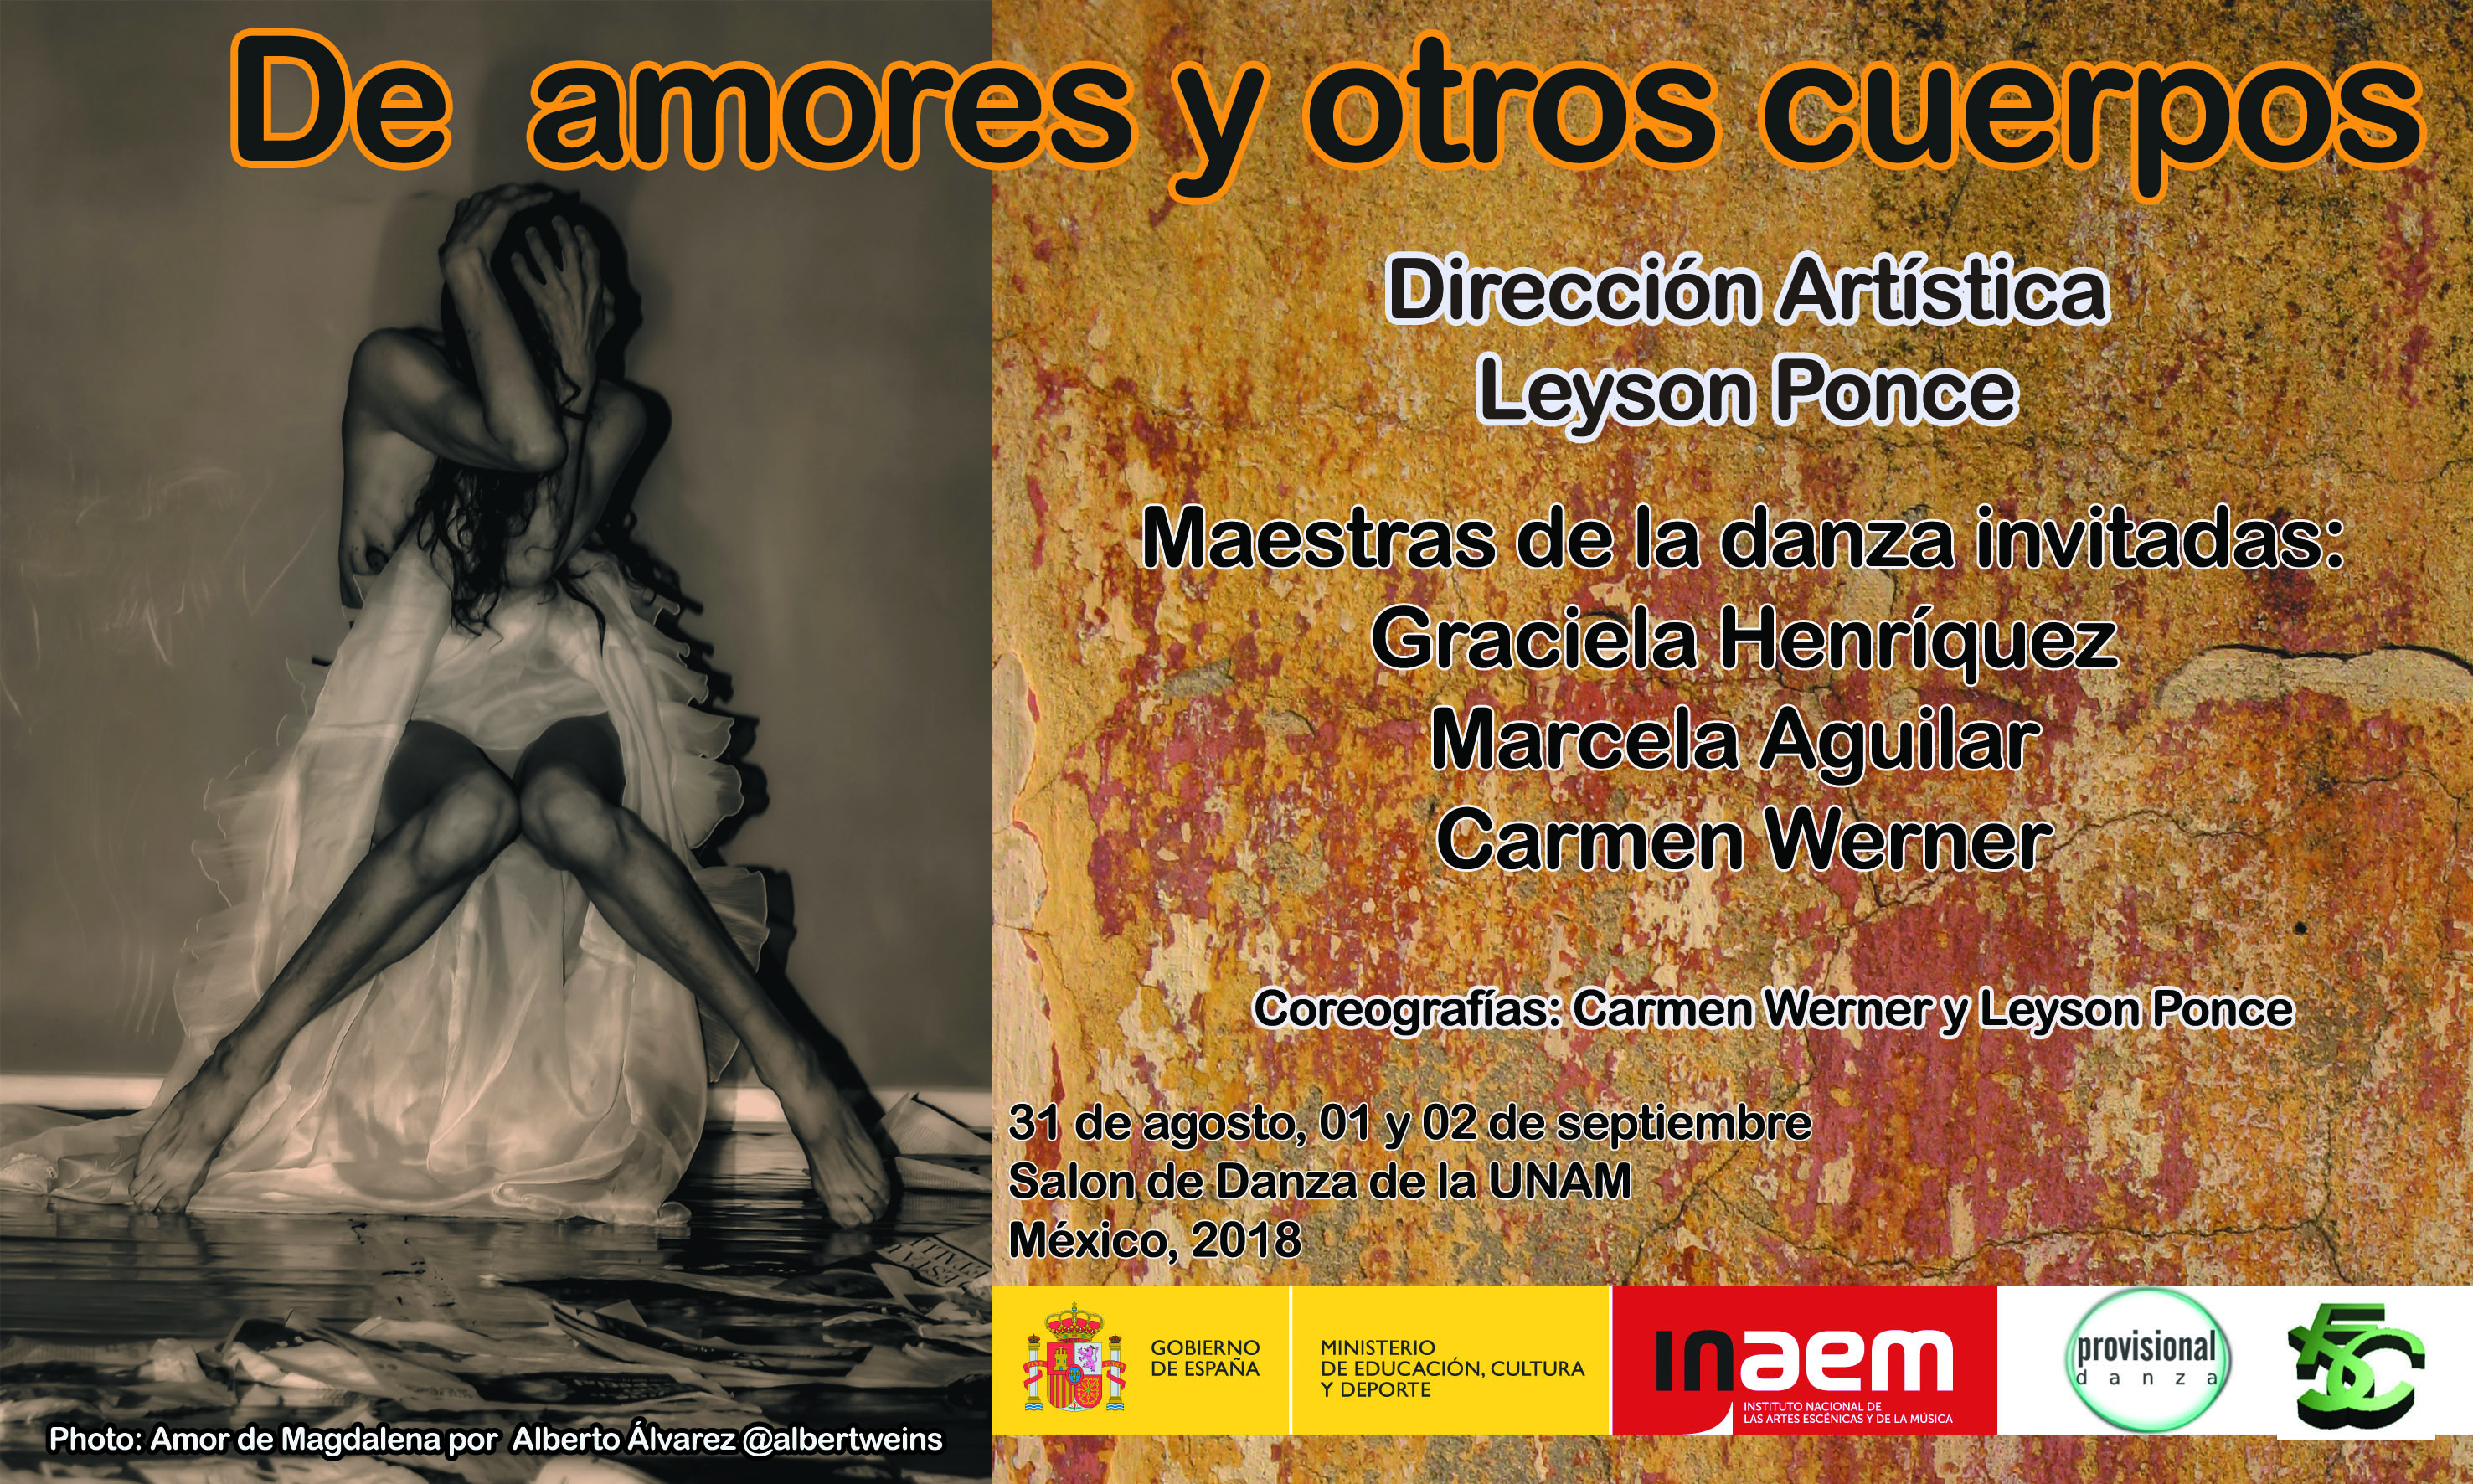 Obra “De amores y otros cuerpos” en la UNAM México D.F.